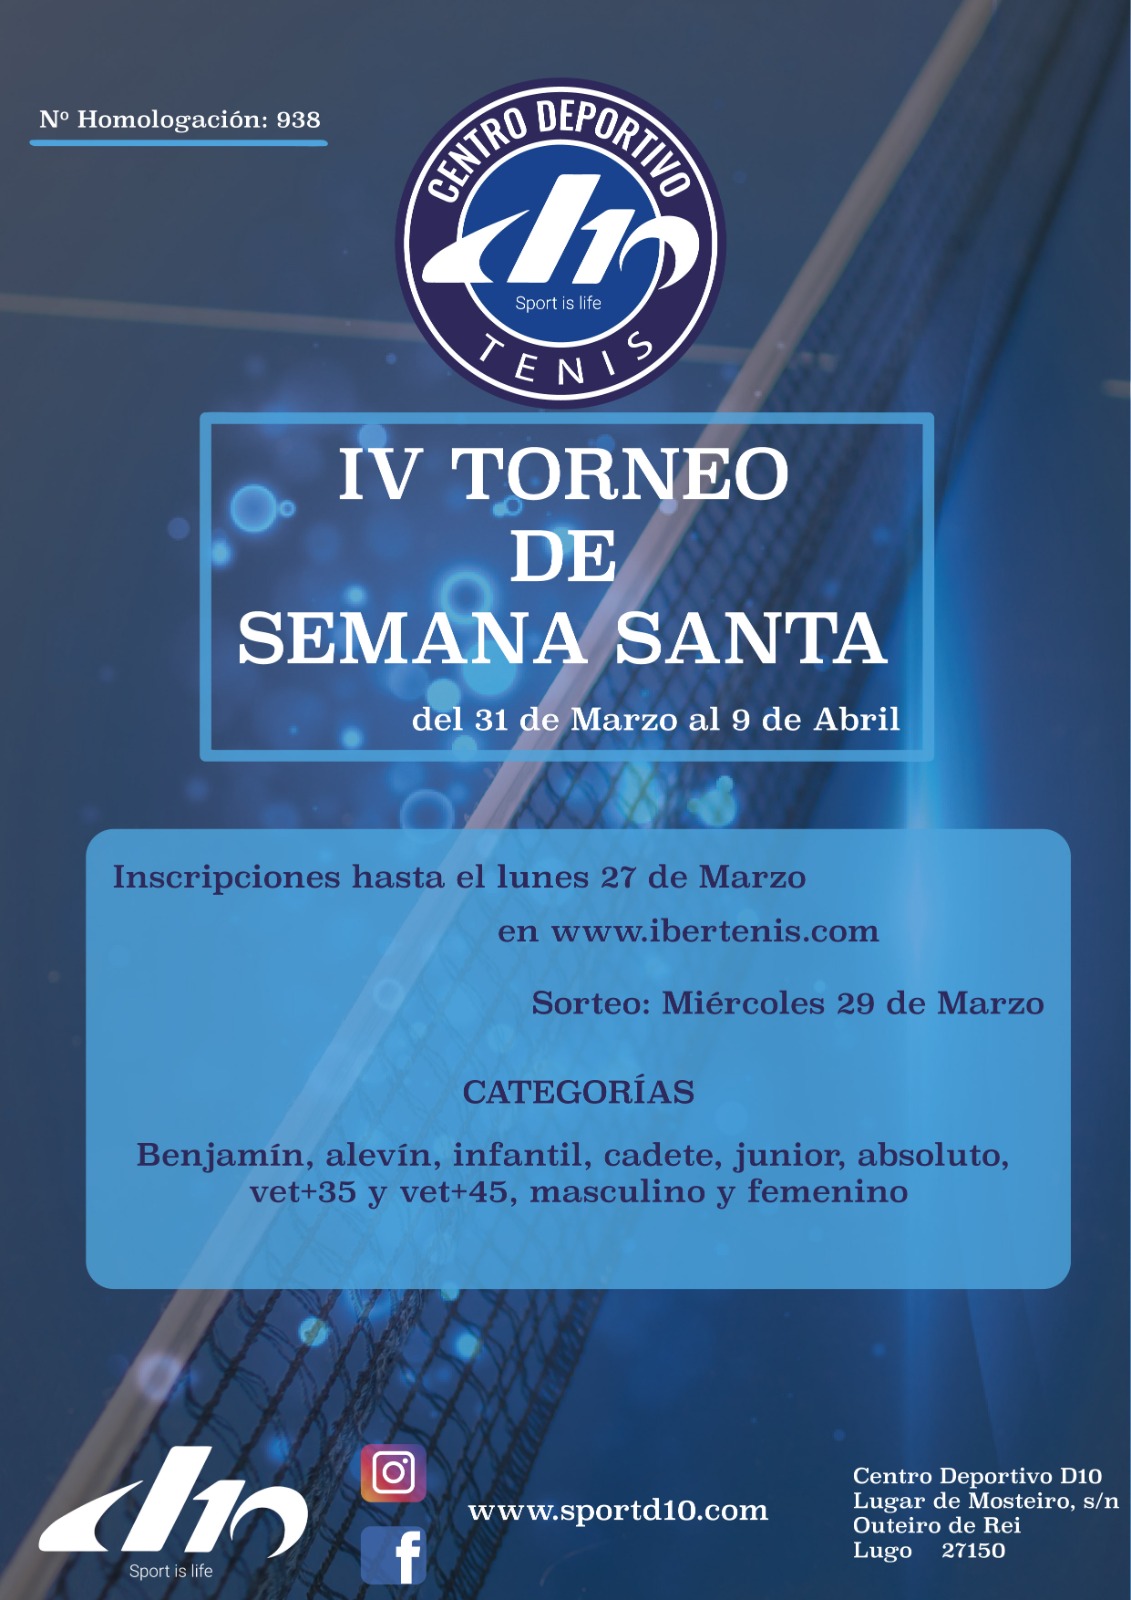 IV TORNEO DE SEMANA SANTA - CENTRO DEPORTIVO D10